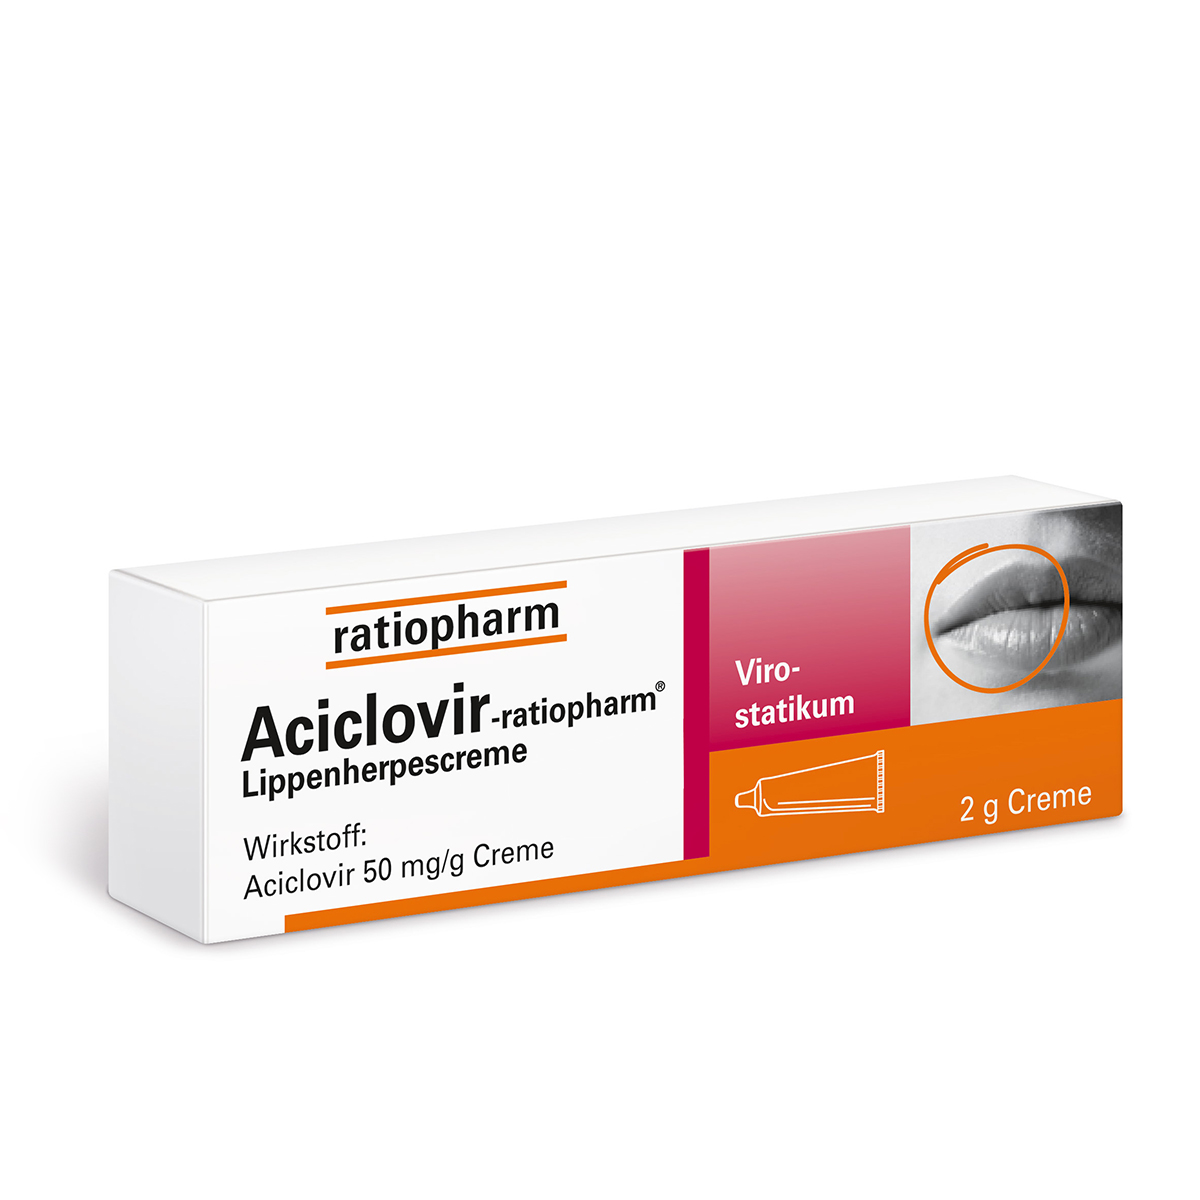 Buy Aciclovir online in the US pharmacy.